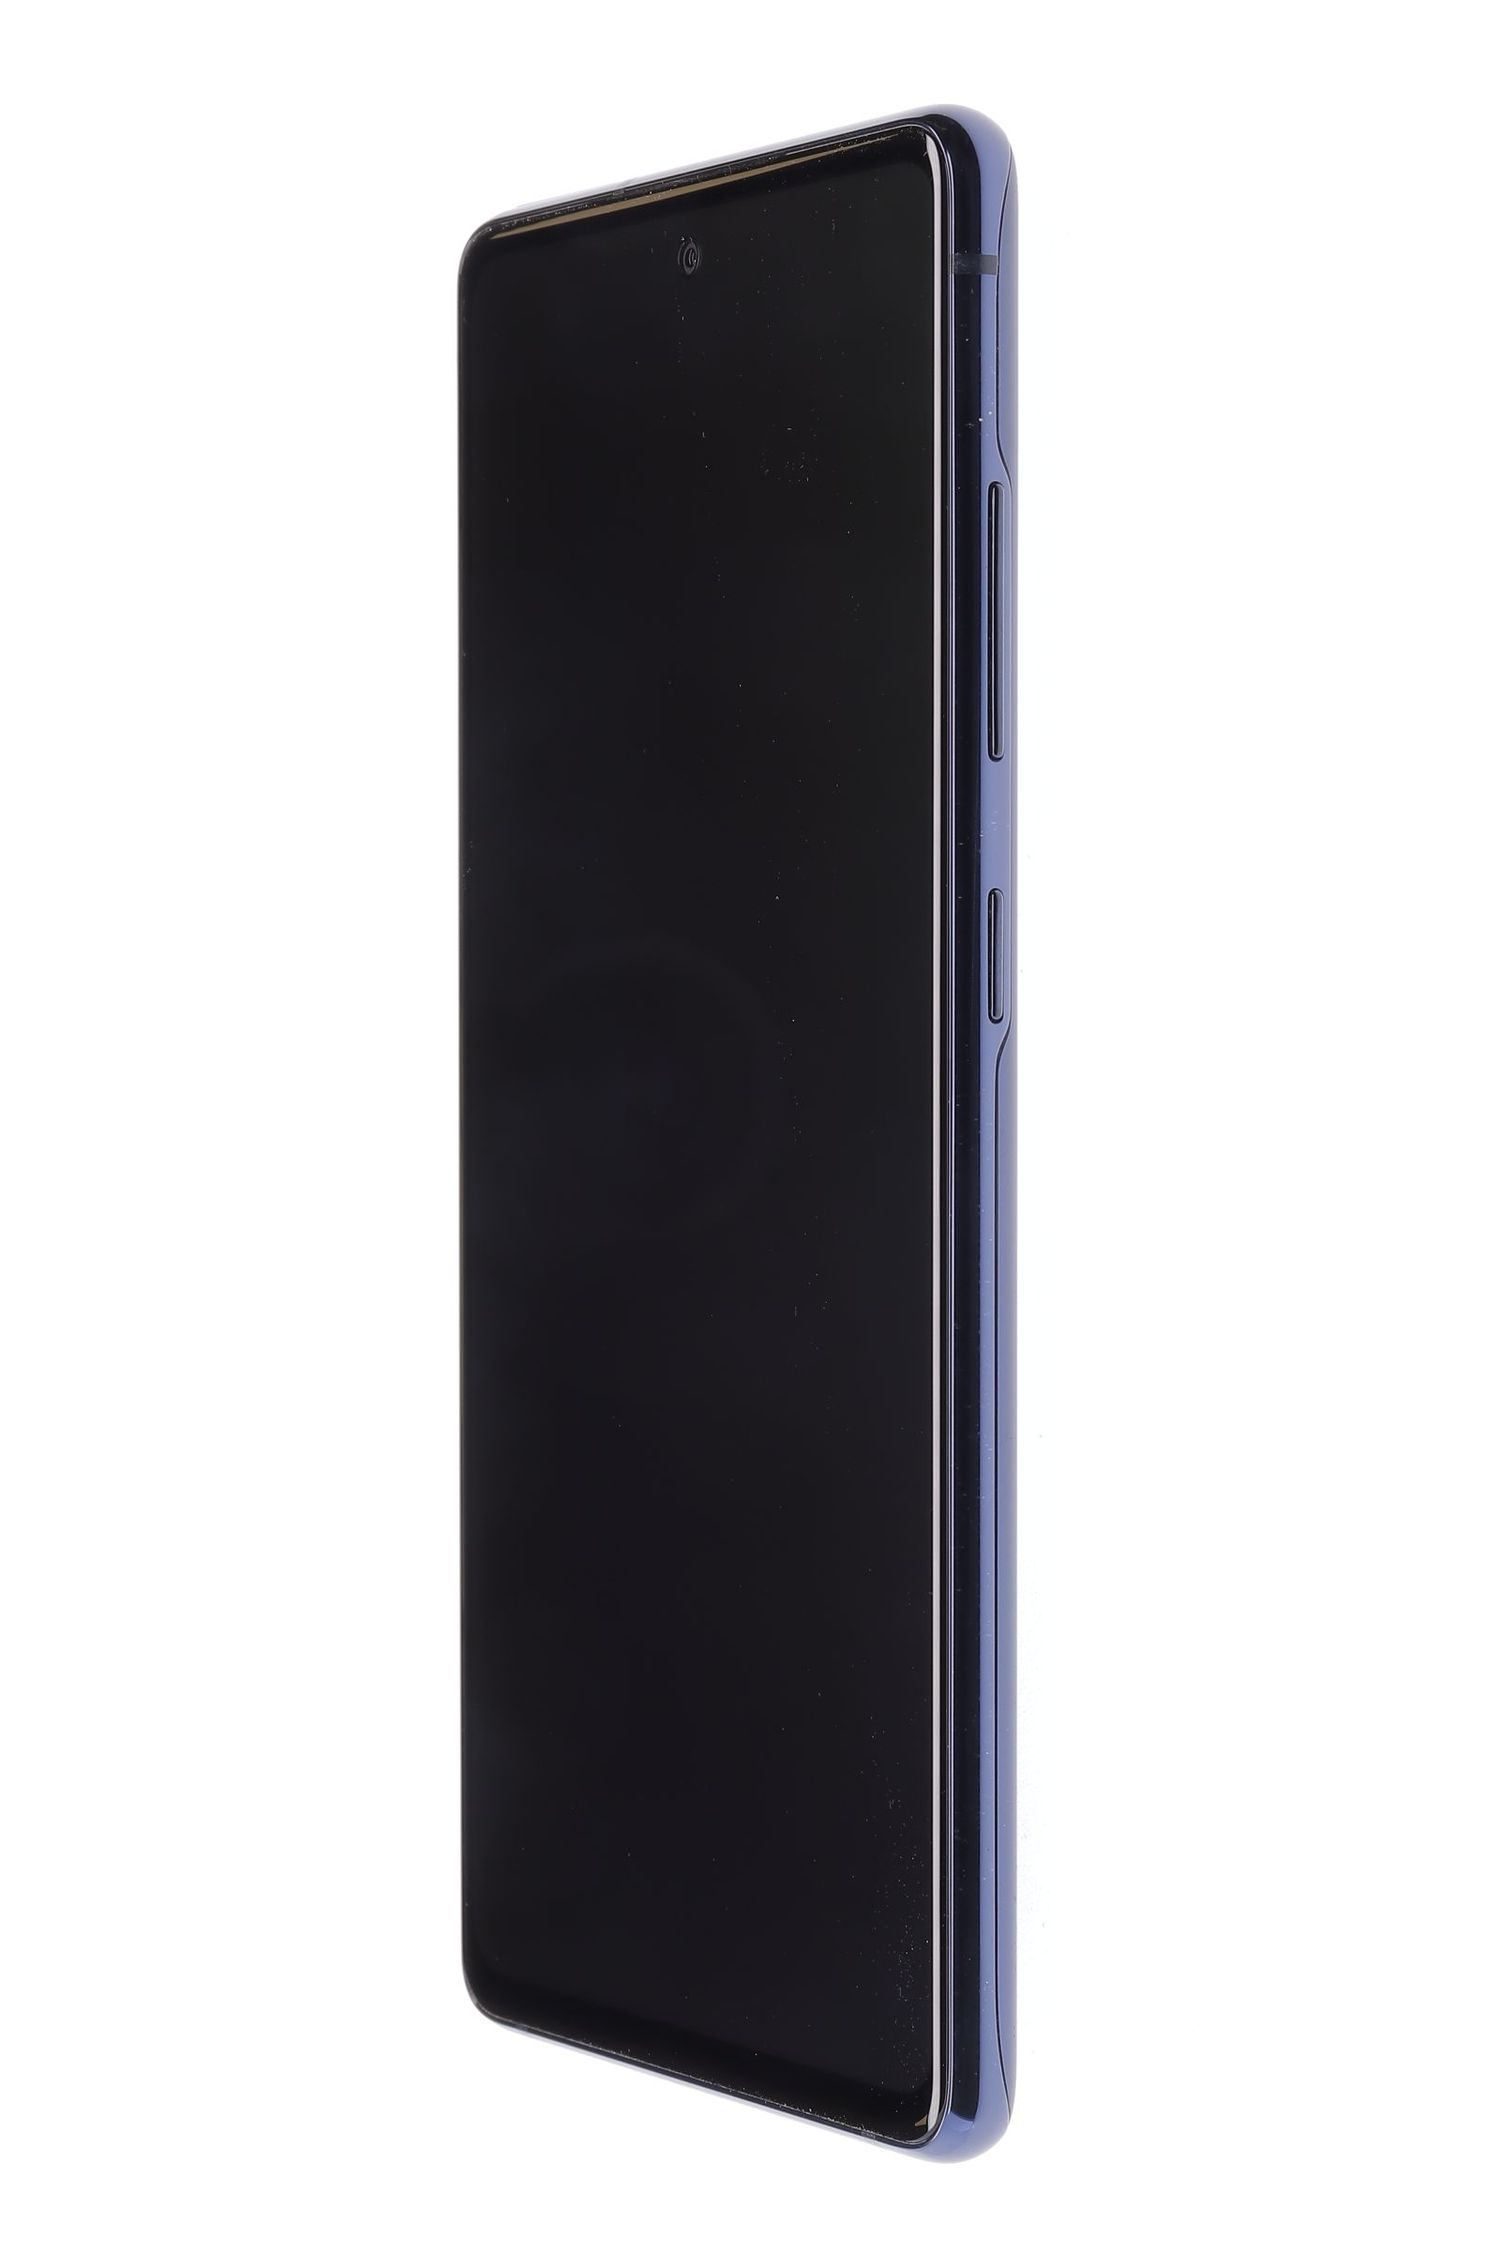 Telefon mobil Samsung Galaxy S20 FE Dual Sim, Cloud Navy, 128 GB, Foarte Bun